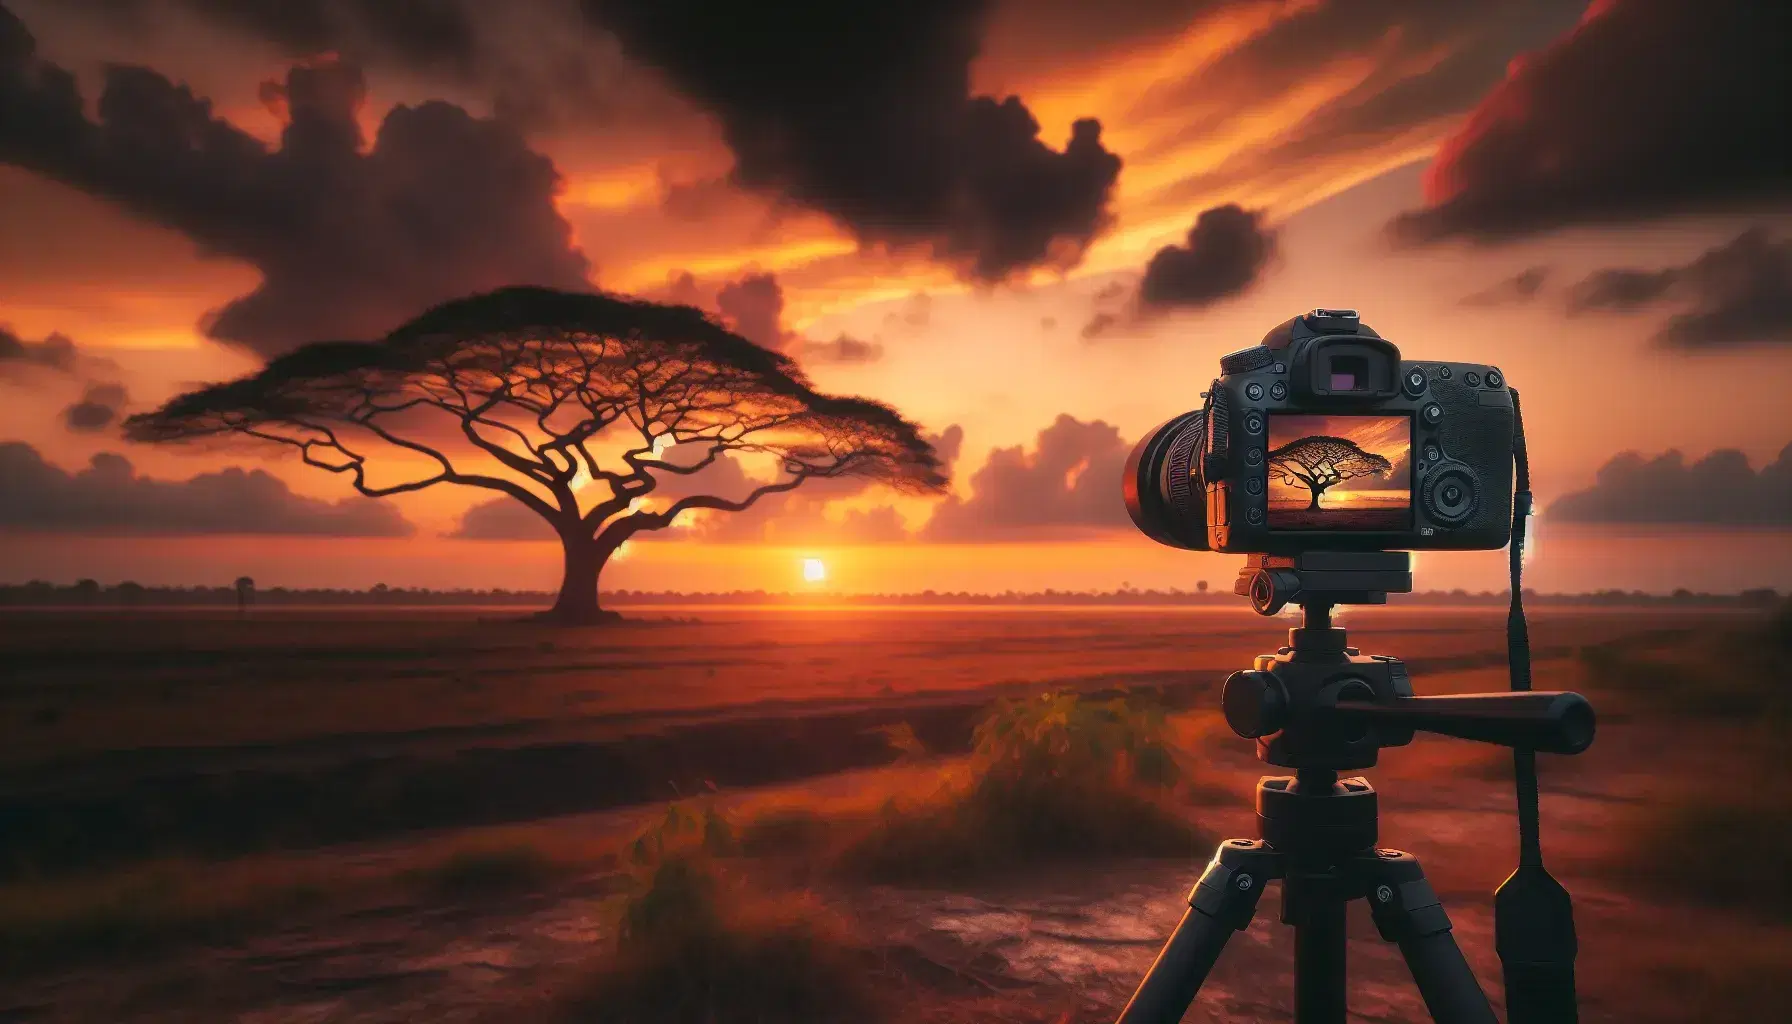 Cámara réflex digital en trípode capturando puesta de sol con árbol solitario y cielo de tonos cálidos, sin personas y enfoque en técnica fotográfica.